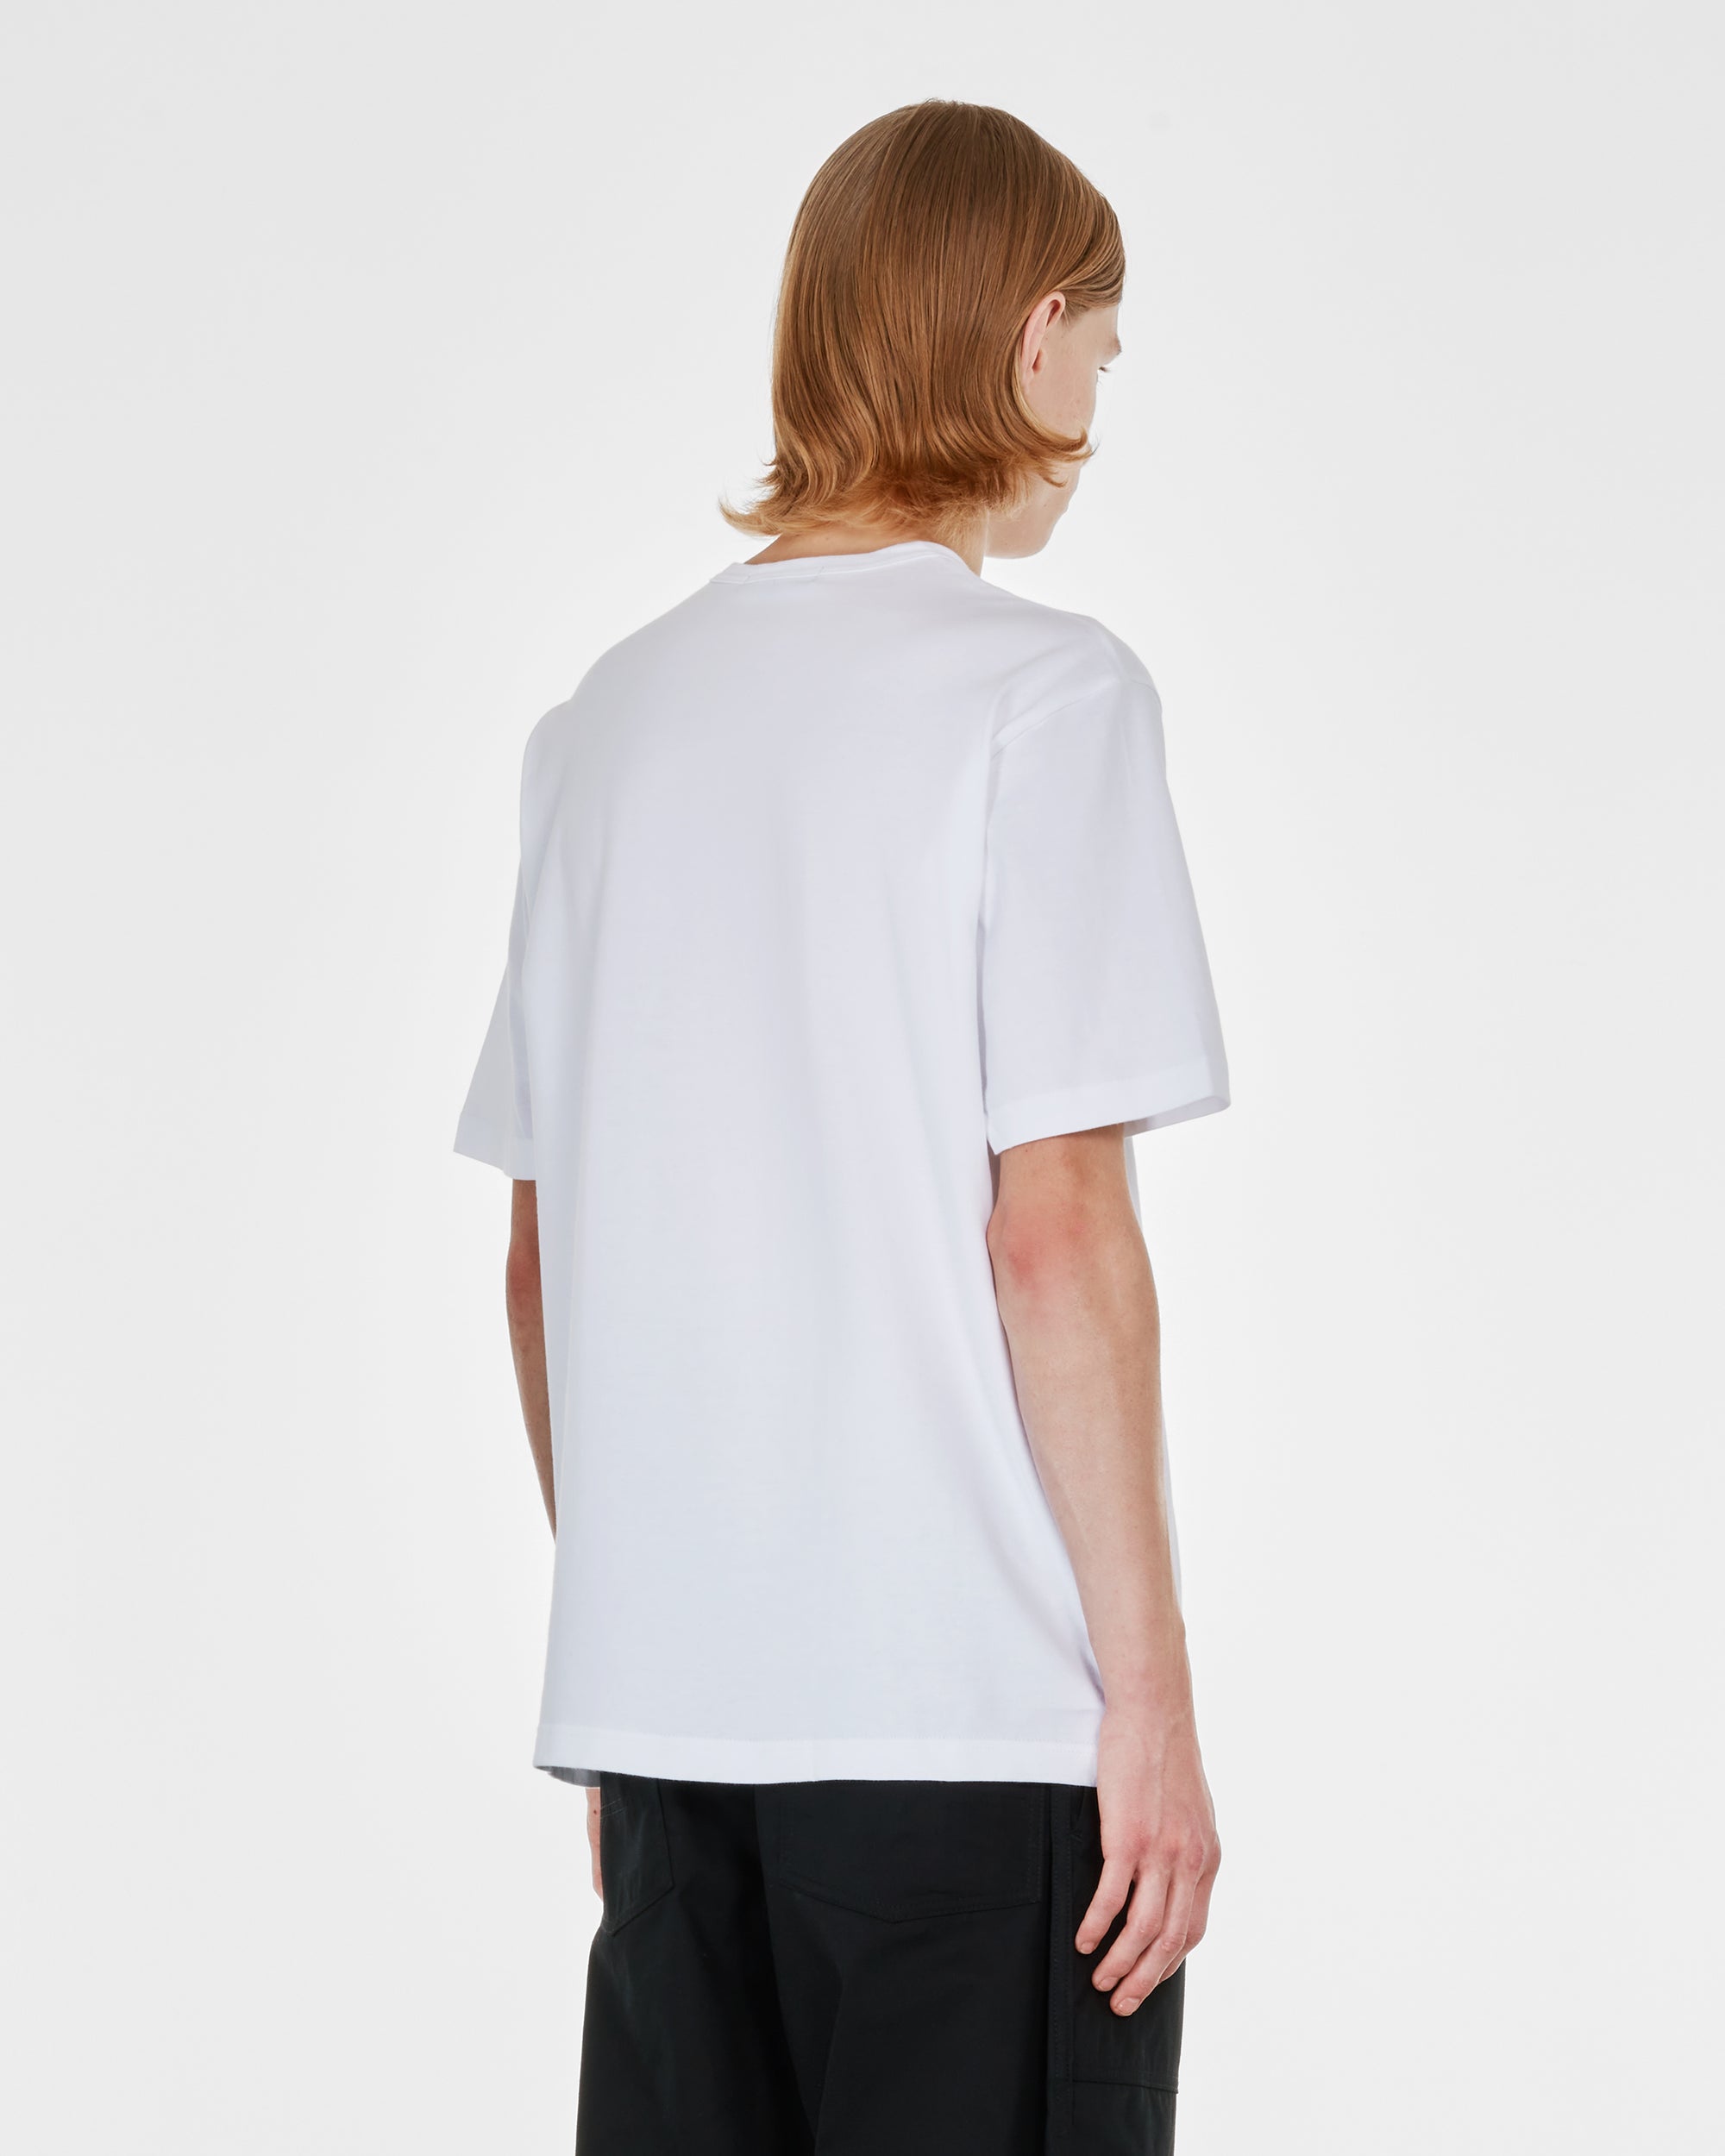 Comme des Garçons Homme - Men's Logo T-Shirt - (White) view 4